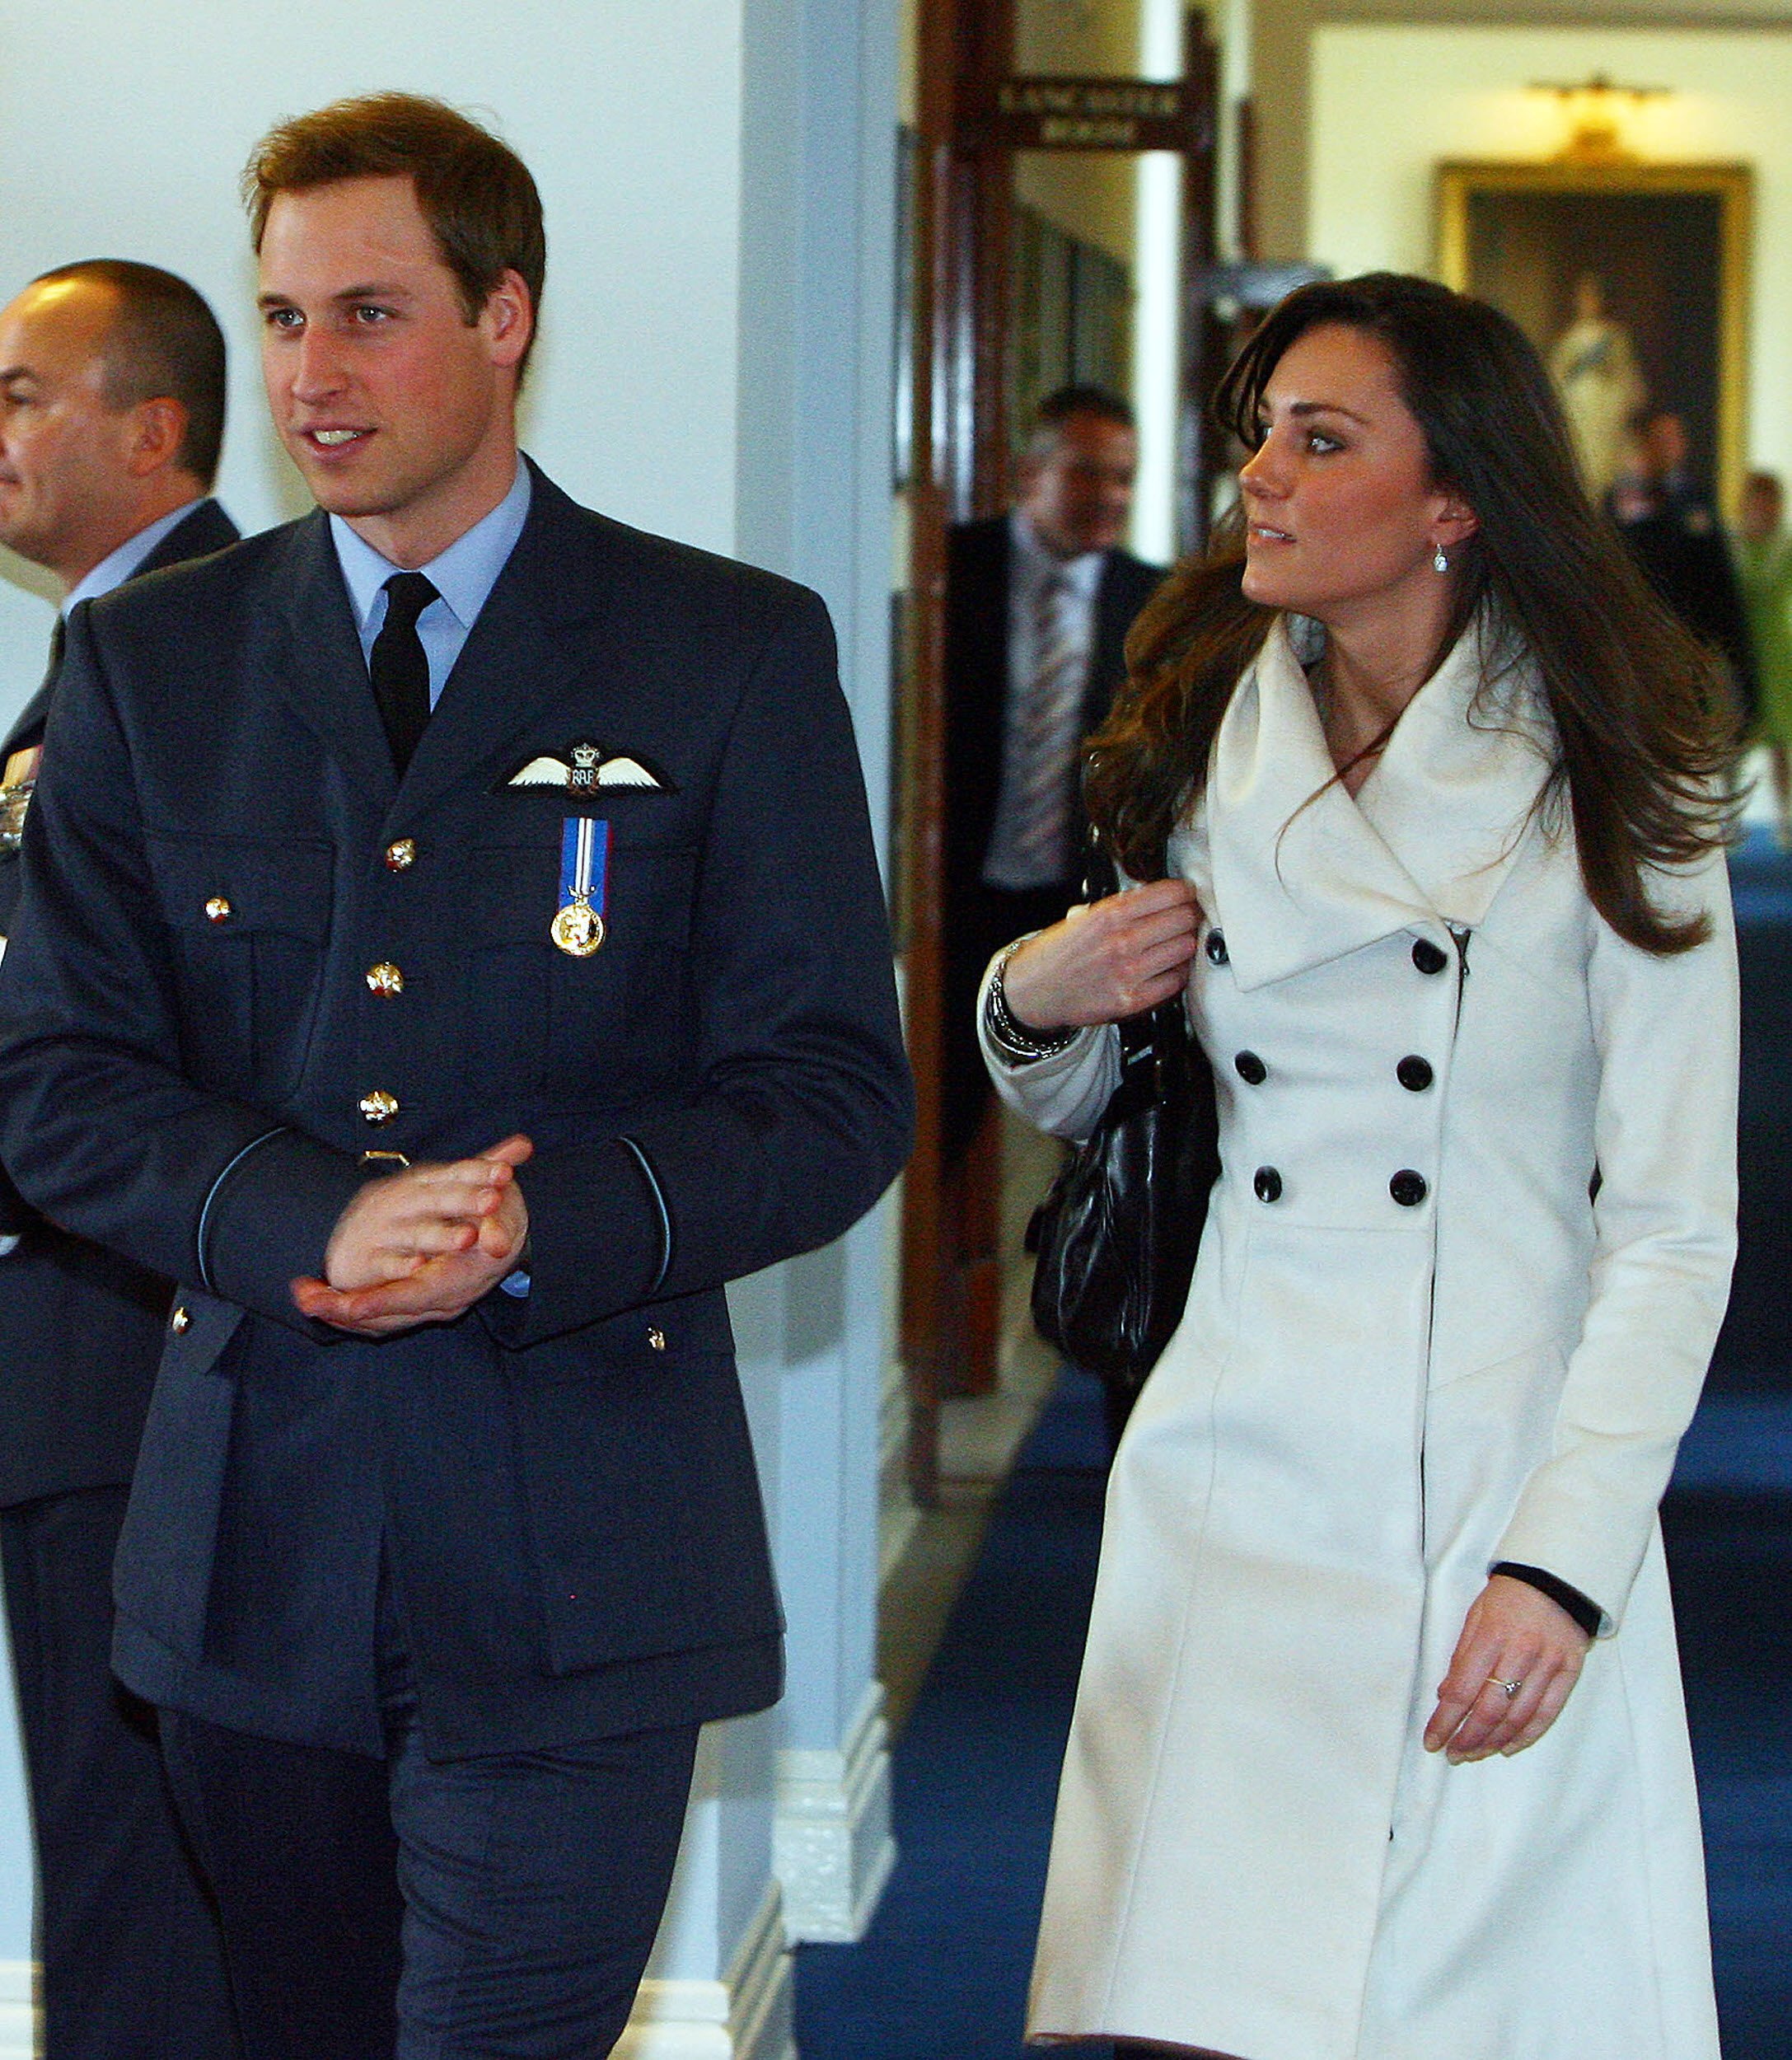 Le prince William et Kate Middleton lors de la cérémonie de remise des diplômes à RAF Cranwell le 11 avril 2008 | Source : Getty Images